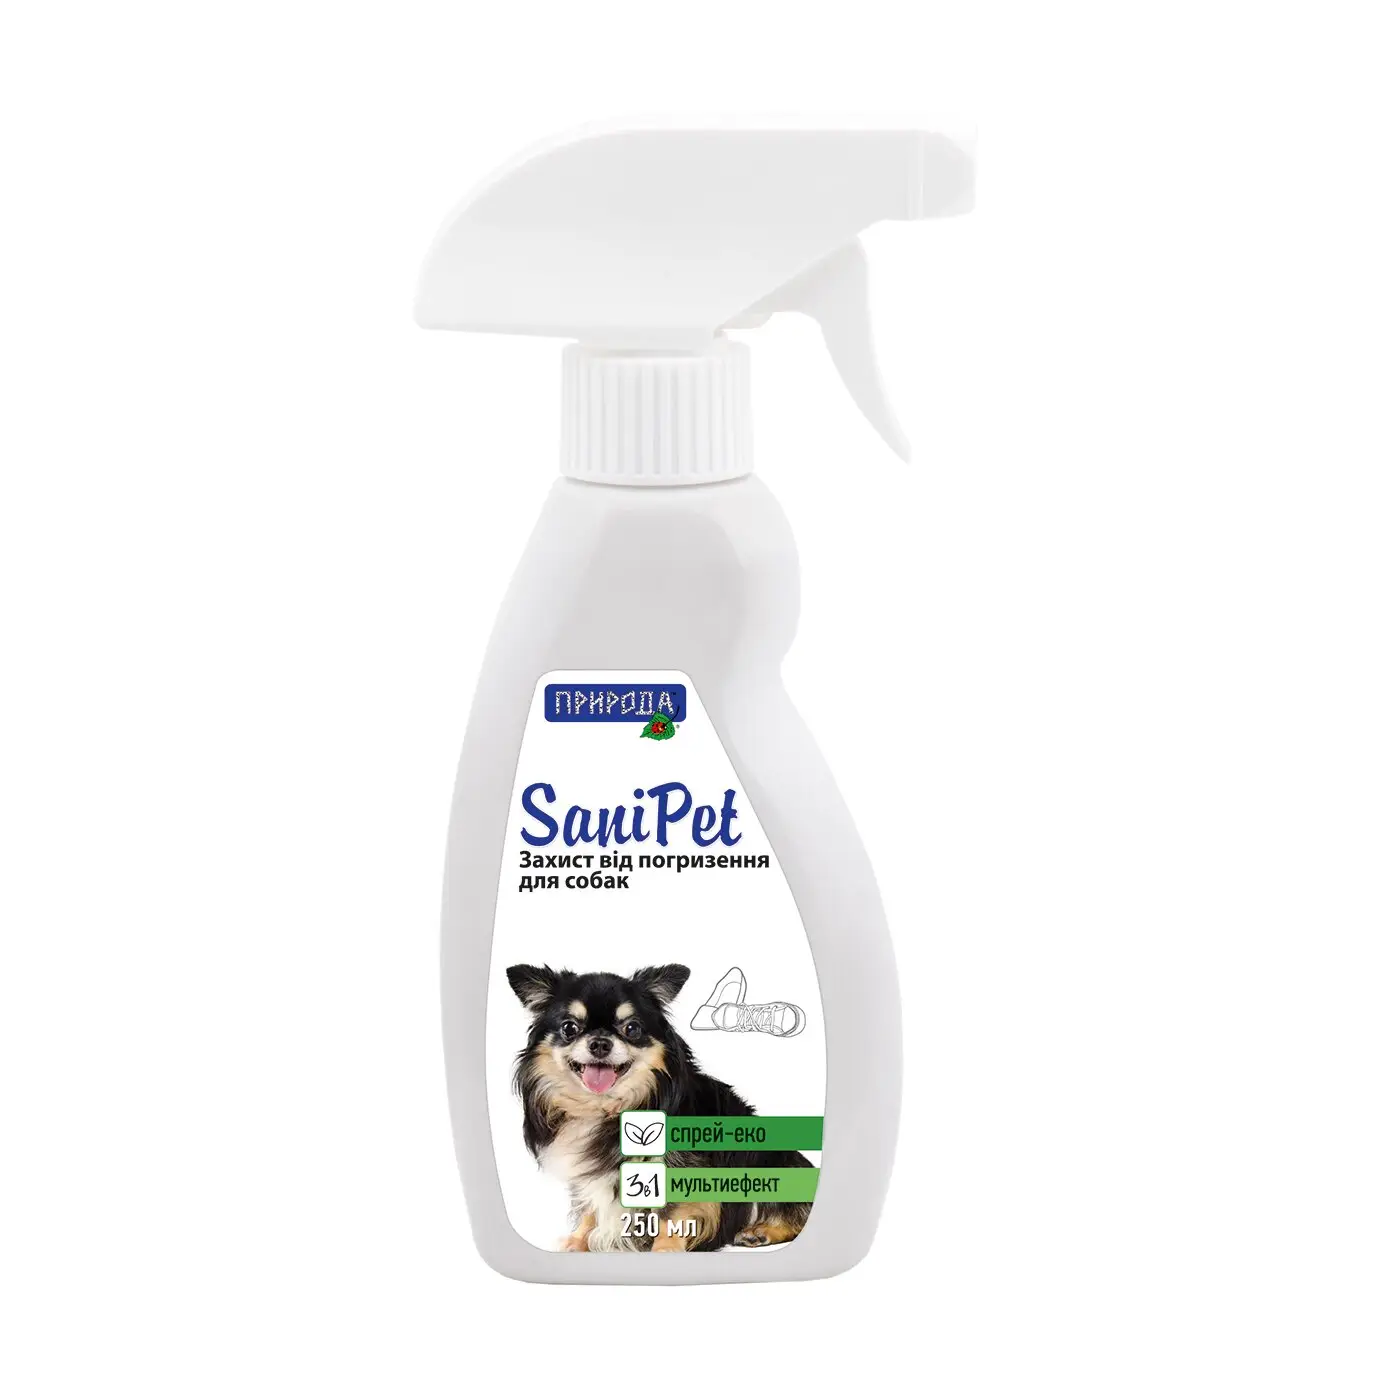 Природа Sani Pet спрей-відлякувач для собак (для захисту від погризення) 250 мл1